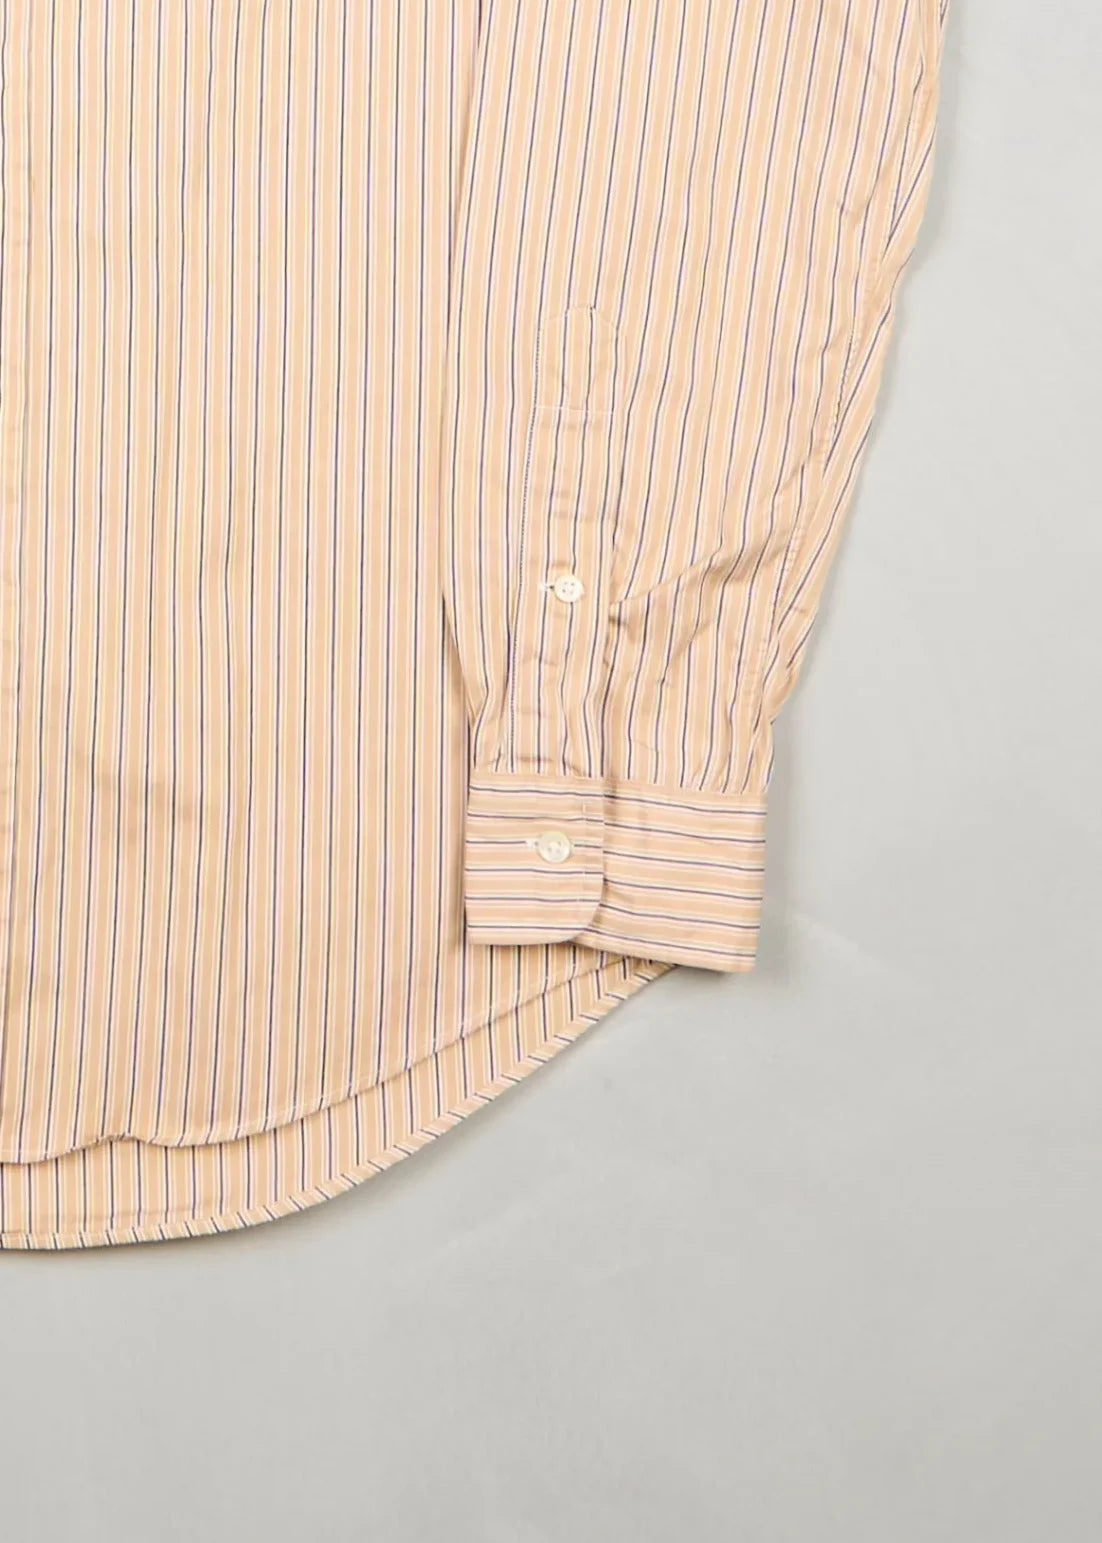 Ralph Lauren - Shirt (S) Bottom Right